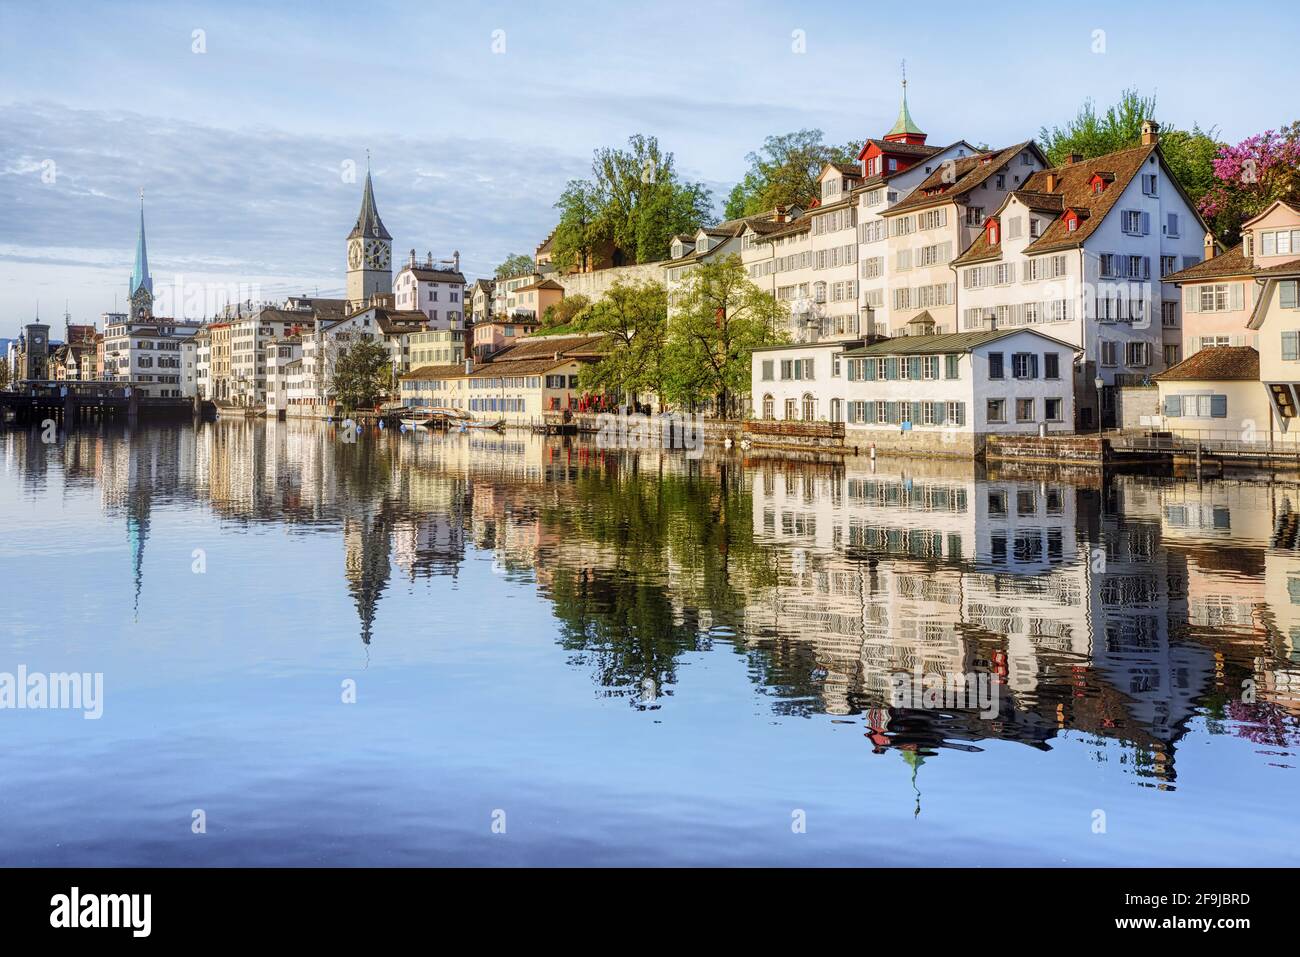 Il centro storico della città di Zurigo, le tradizionali case bianche nel quartiere di Schipfe riflettono nel fiume Limmat alla luce del primo mattino, Svizzerl Foto Stock